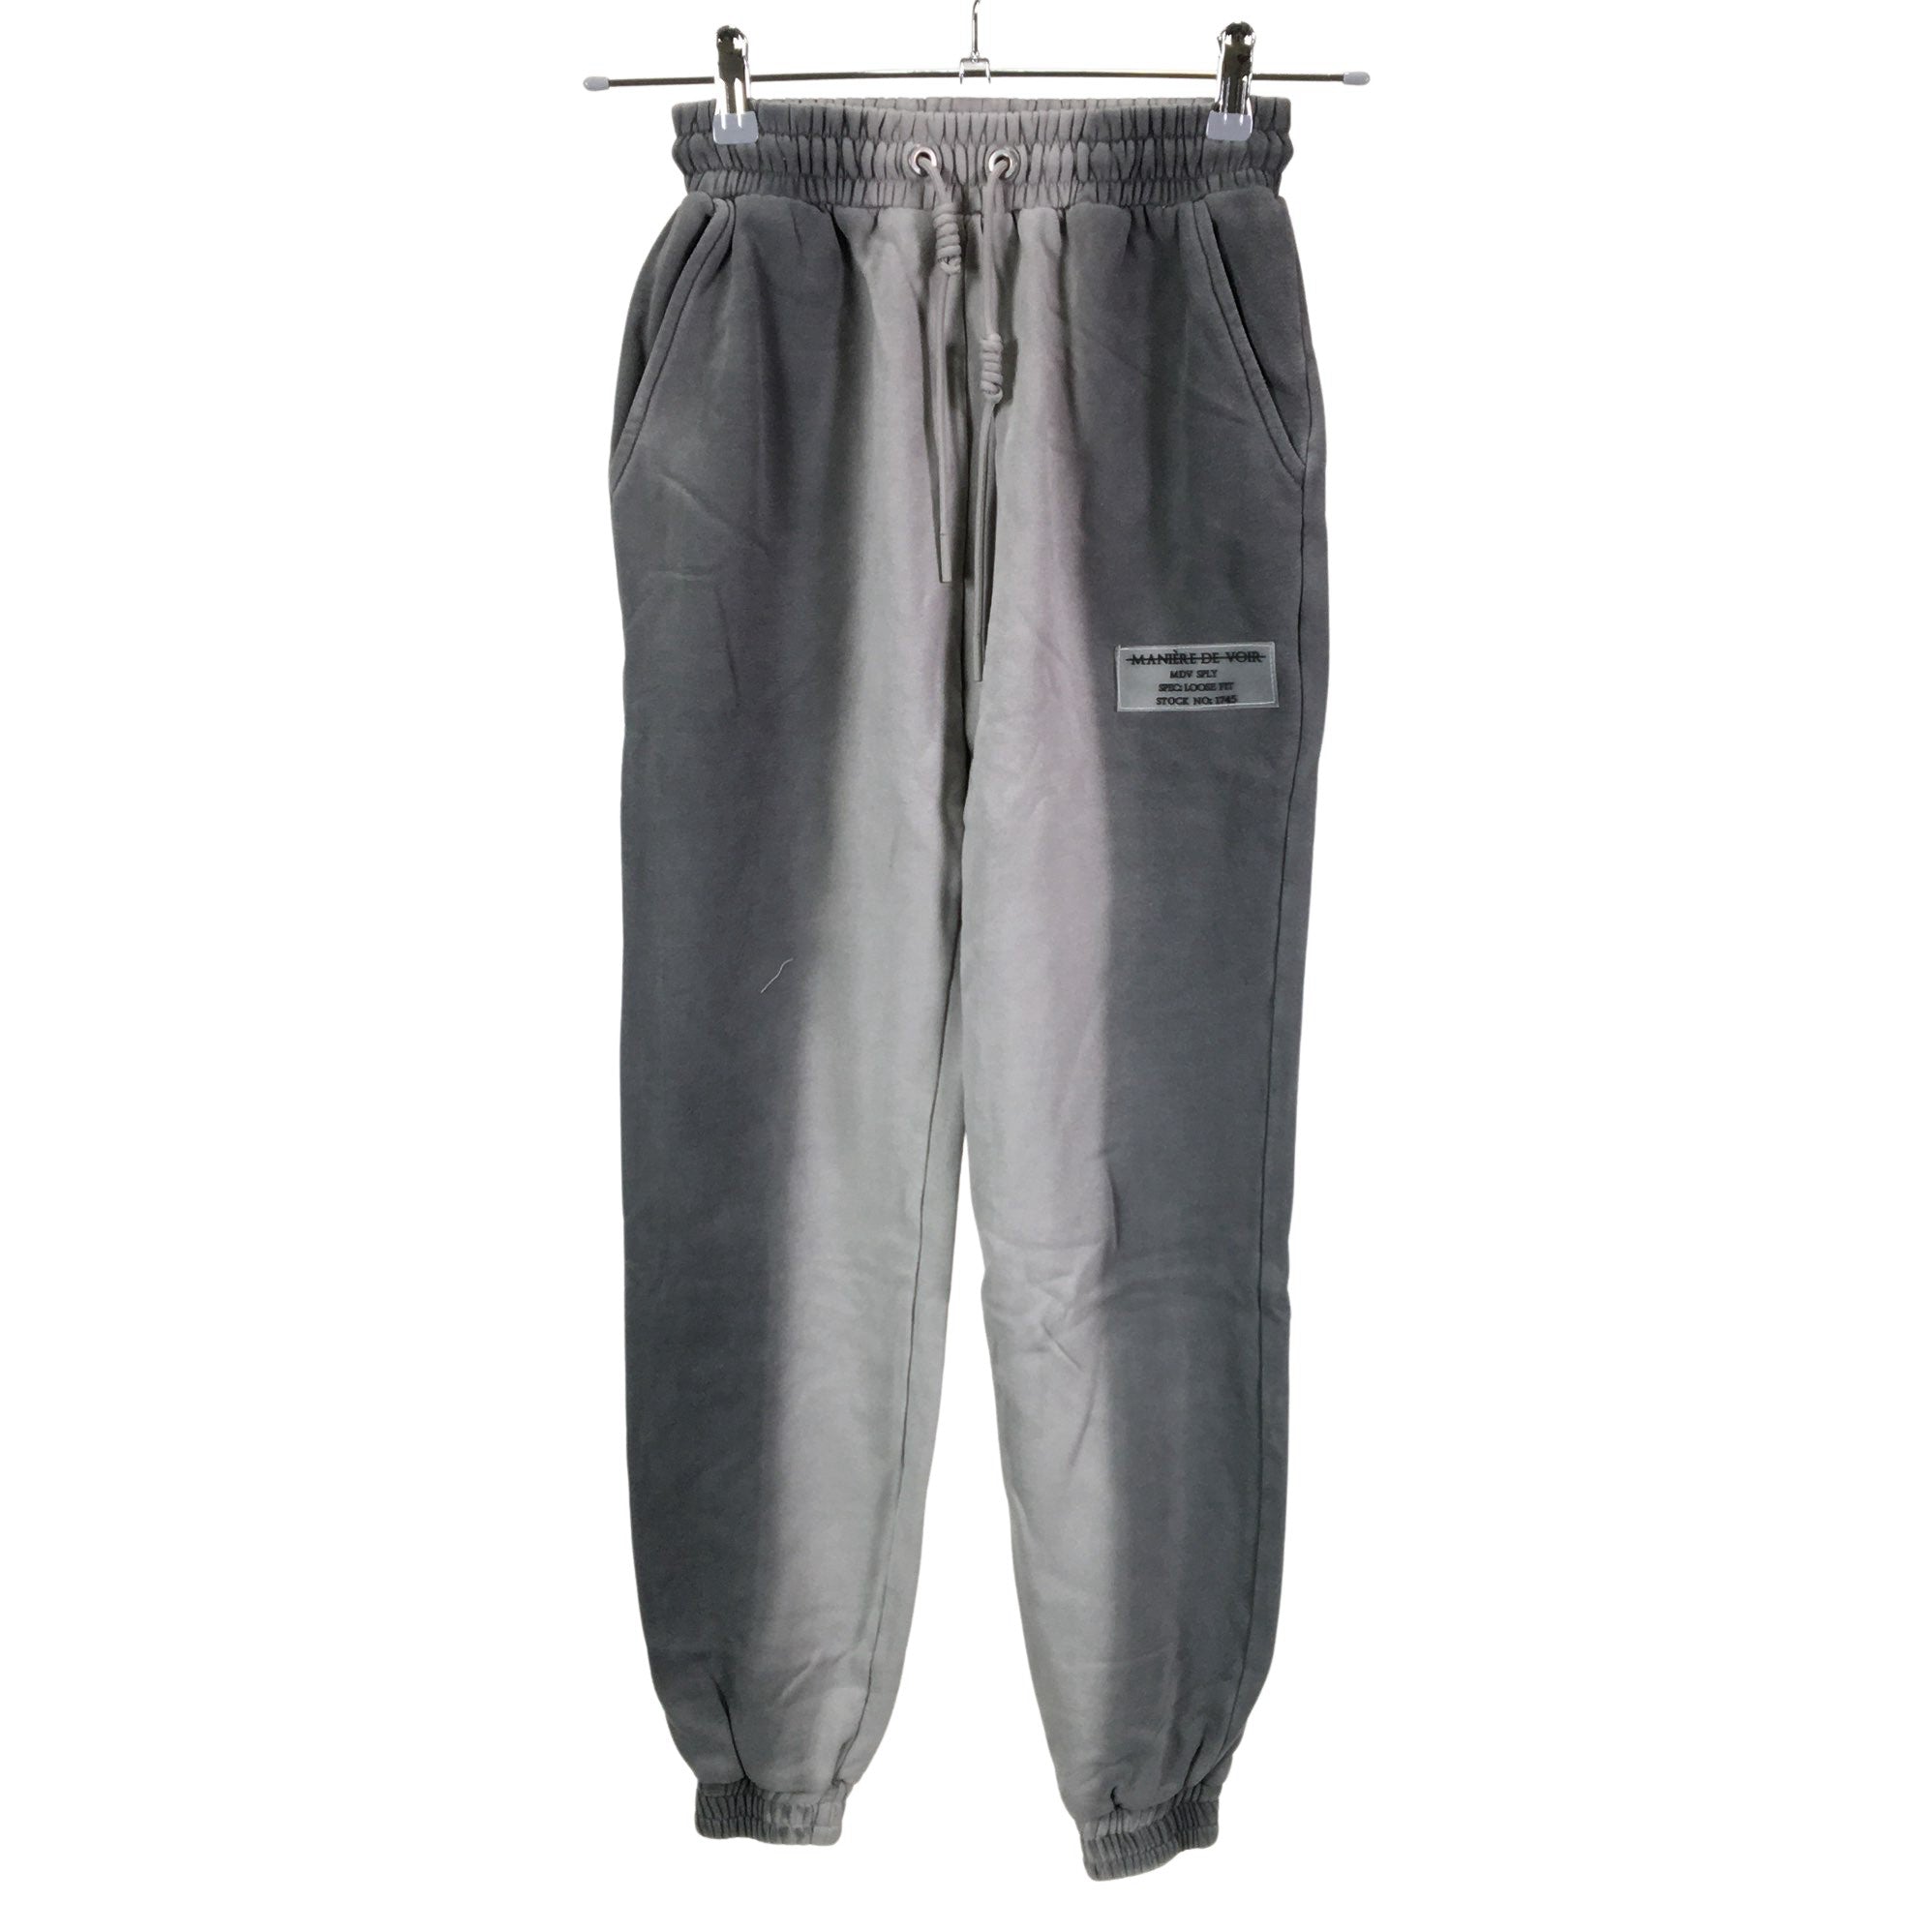 Women's Manière de Voir Sweatpants, size 34 (Grey)